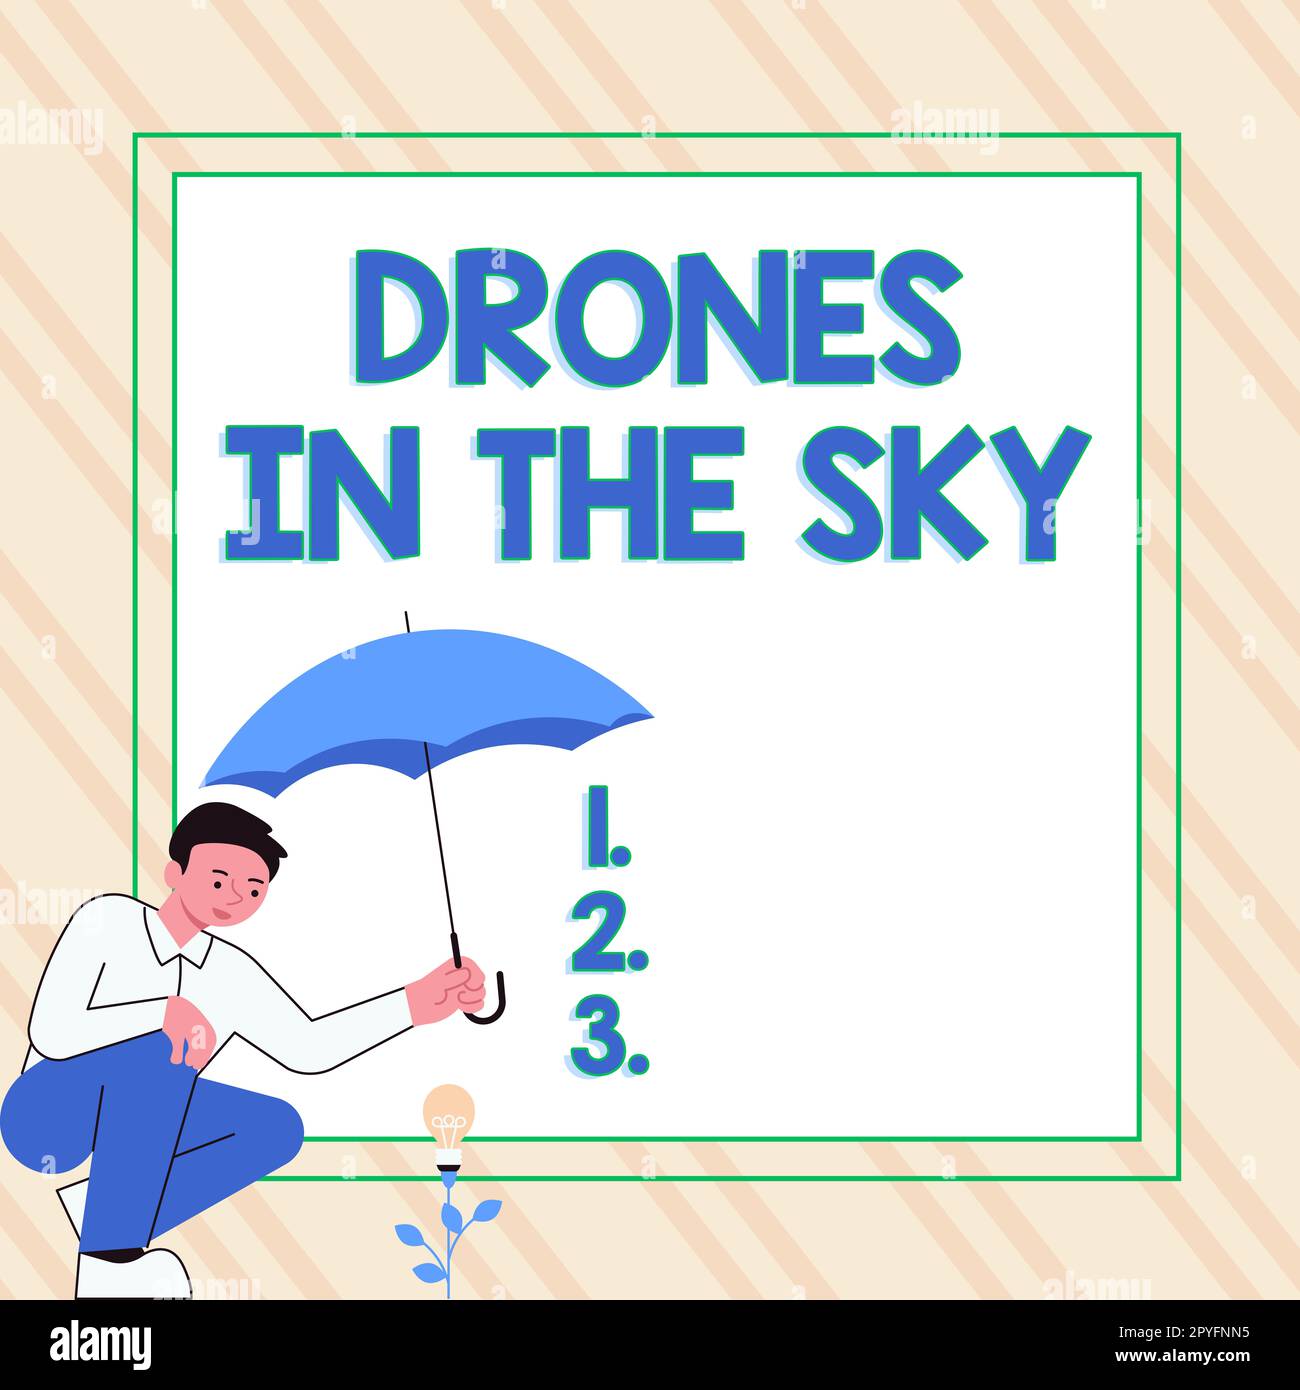 Cartello con i droni in cielo. Business vetrina moderna fotocamera aerea tecnologia avanzata Foto Stock